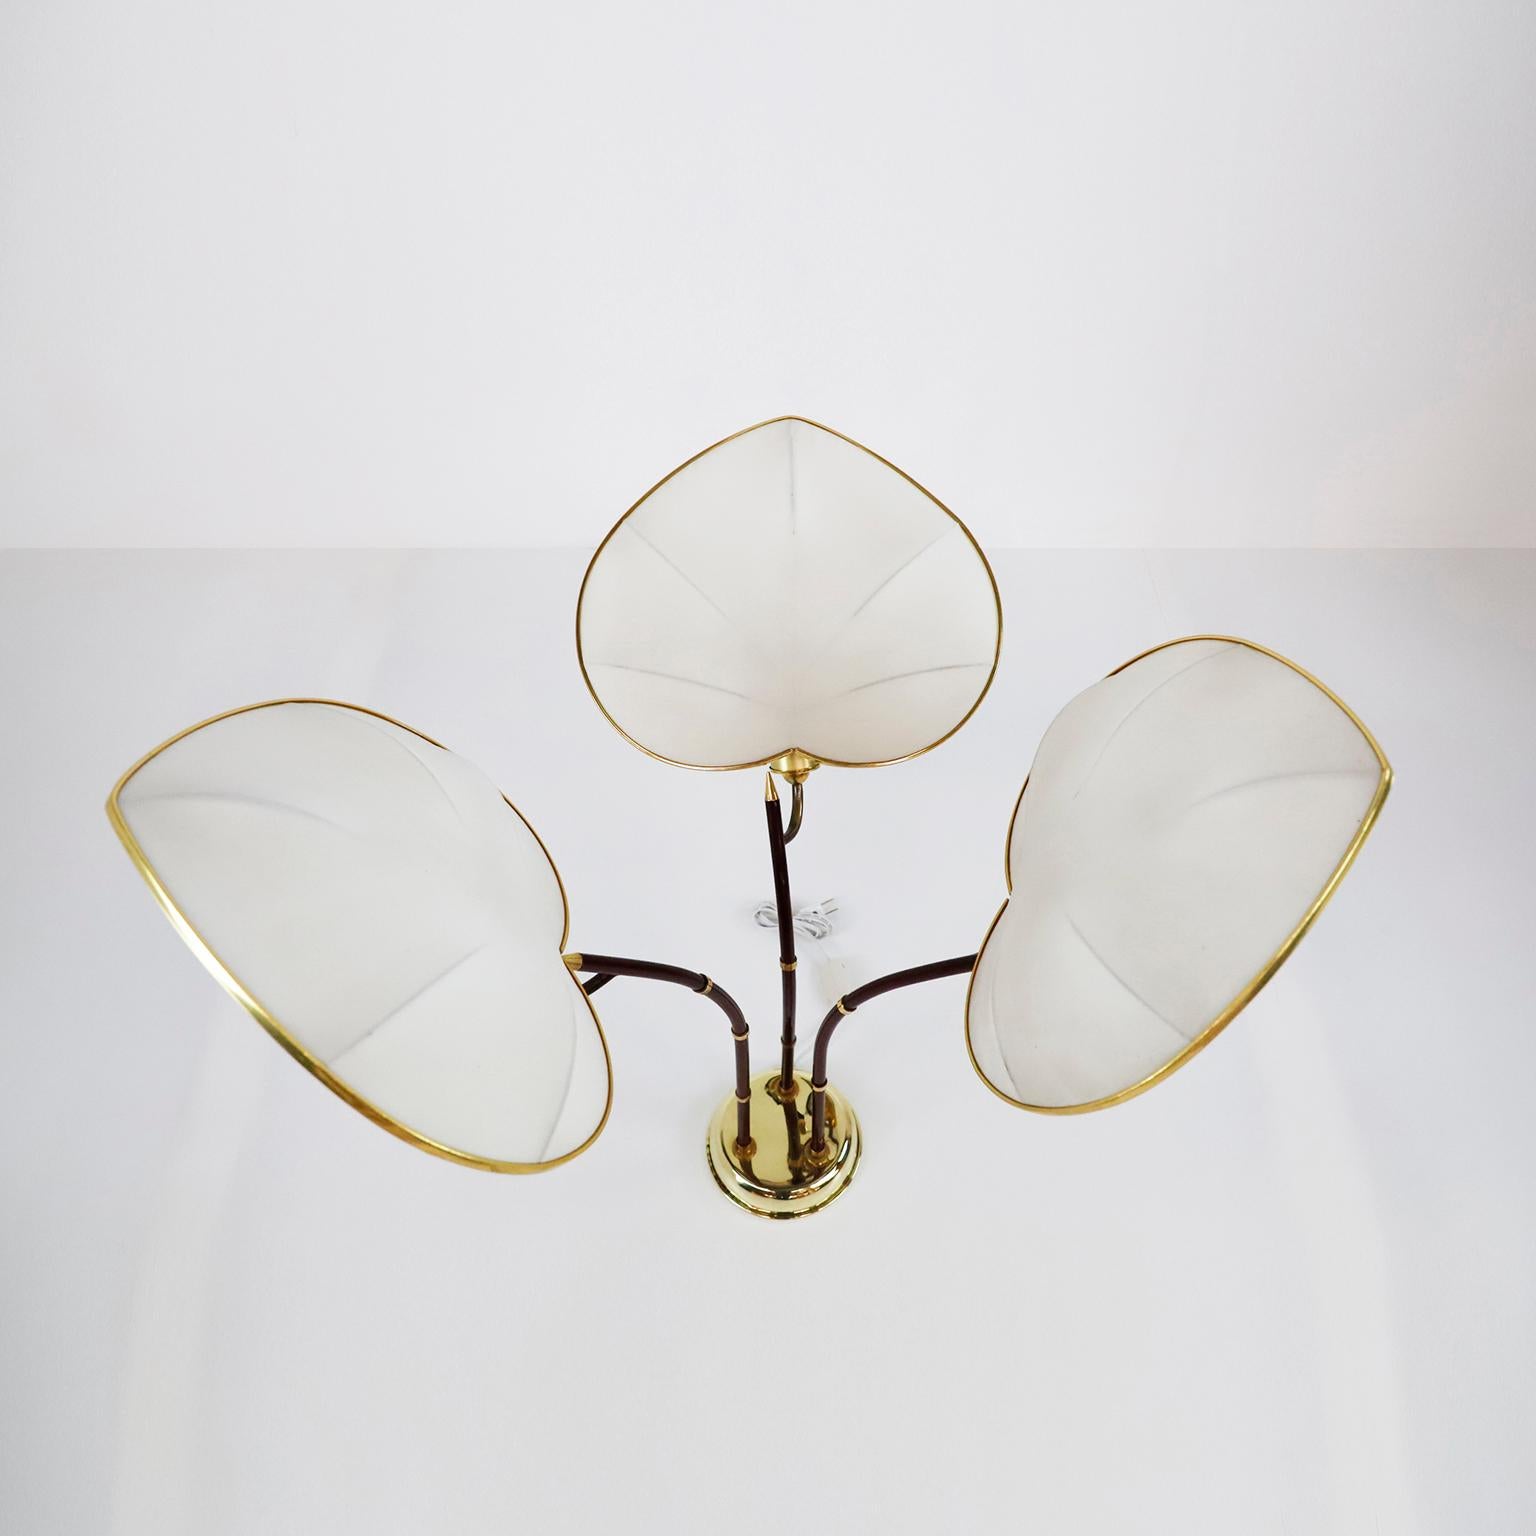 CIRCA 1960, Wir bieten diese Palm Tree Tischlampe von Arturo Pani an. Diese Lampe ist vielleicht eine der skurrilsten unter all den wunderbaren Entwürfen von Arturo Pani. Die aus Messing und weinfarben lackiertem Metallrohr gefertigte Leuchte lässt